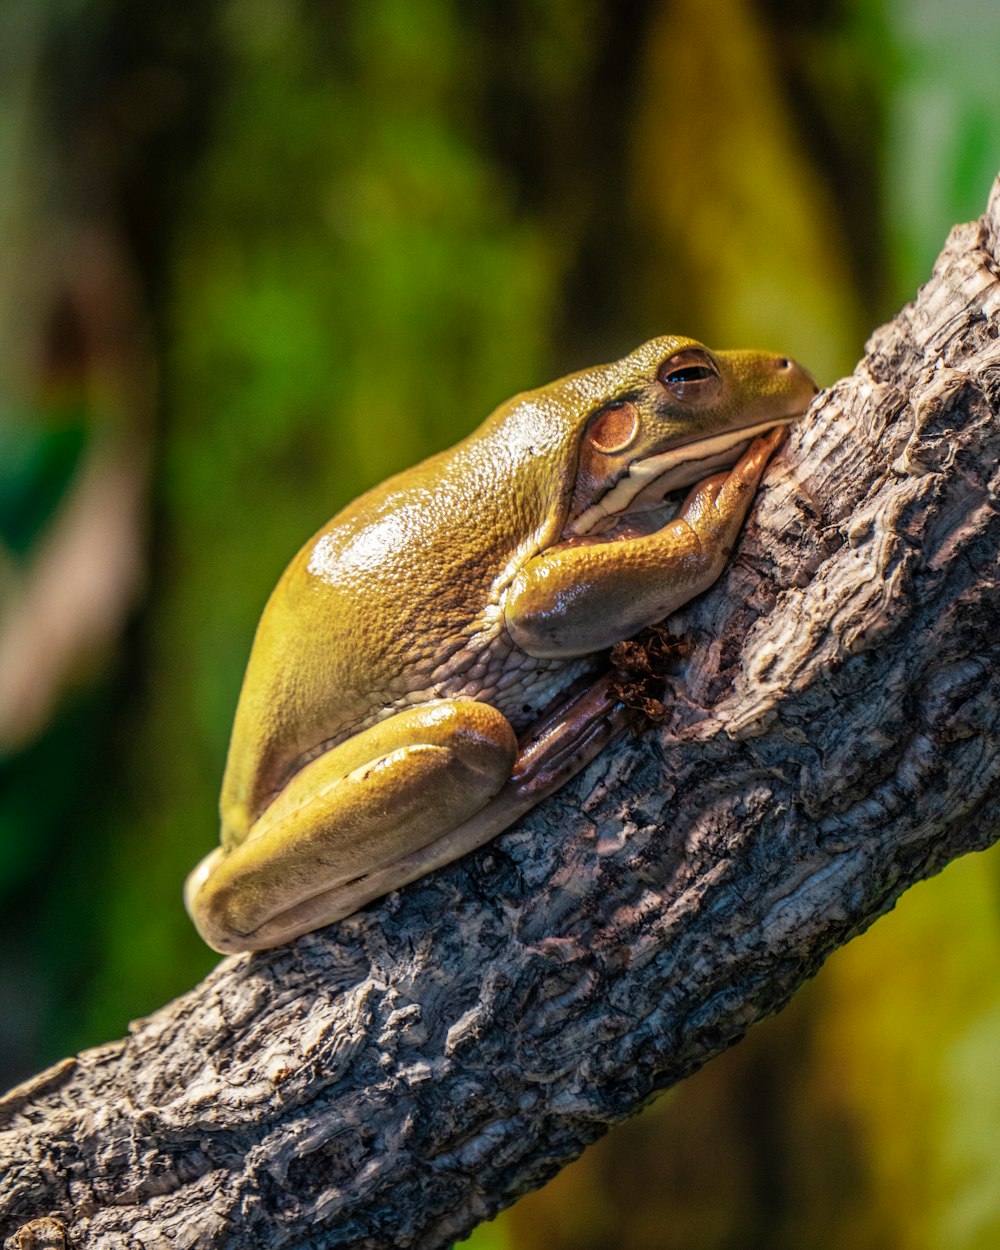 Brauner und weißer Frosch am braunen Baumstamm